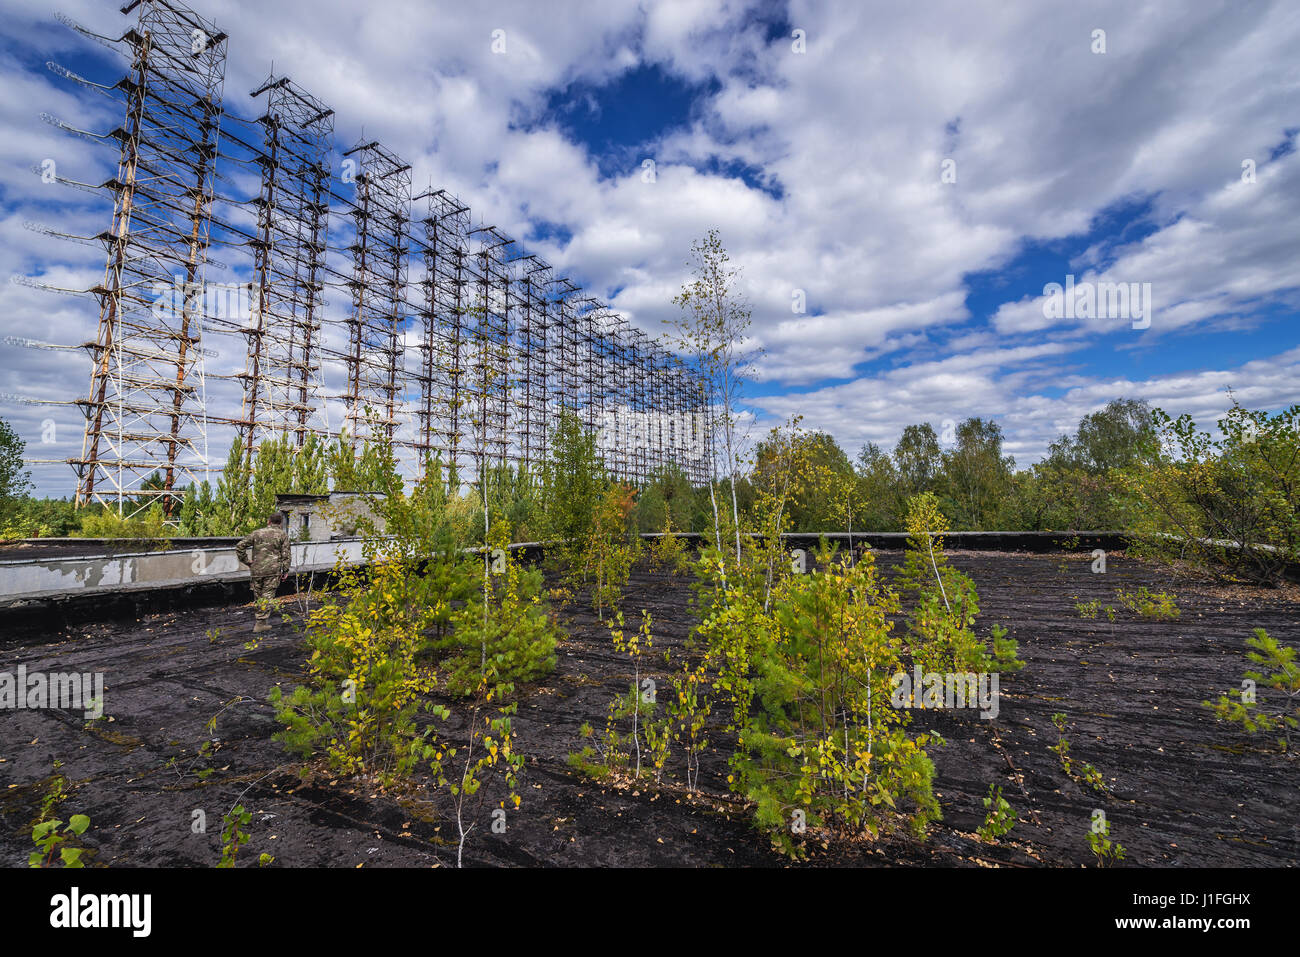 Soviet vecchio sistema radar chiamato Duga di Chernobyl-2 base militare, la centrale nucleare di Cernobyl la zona di alienazione in Ucraina Foto Stock